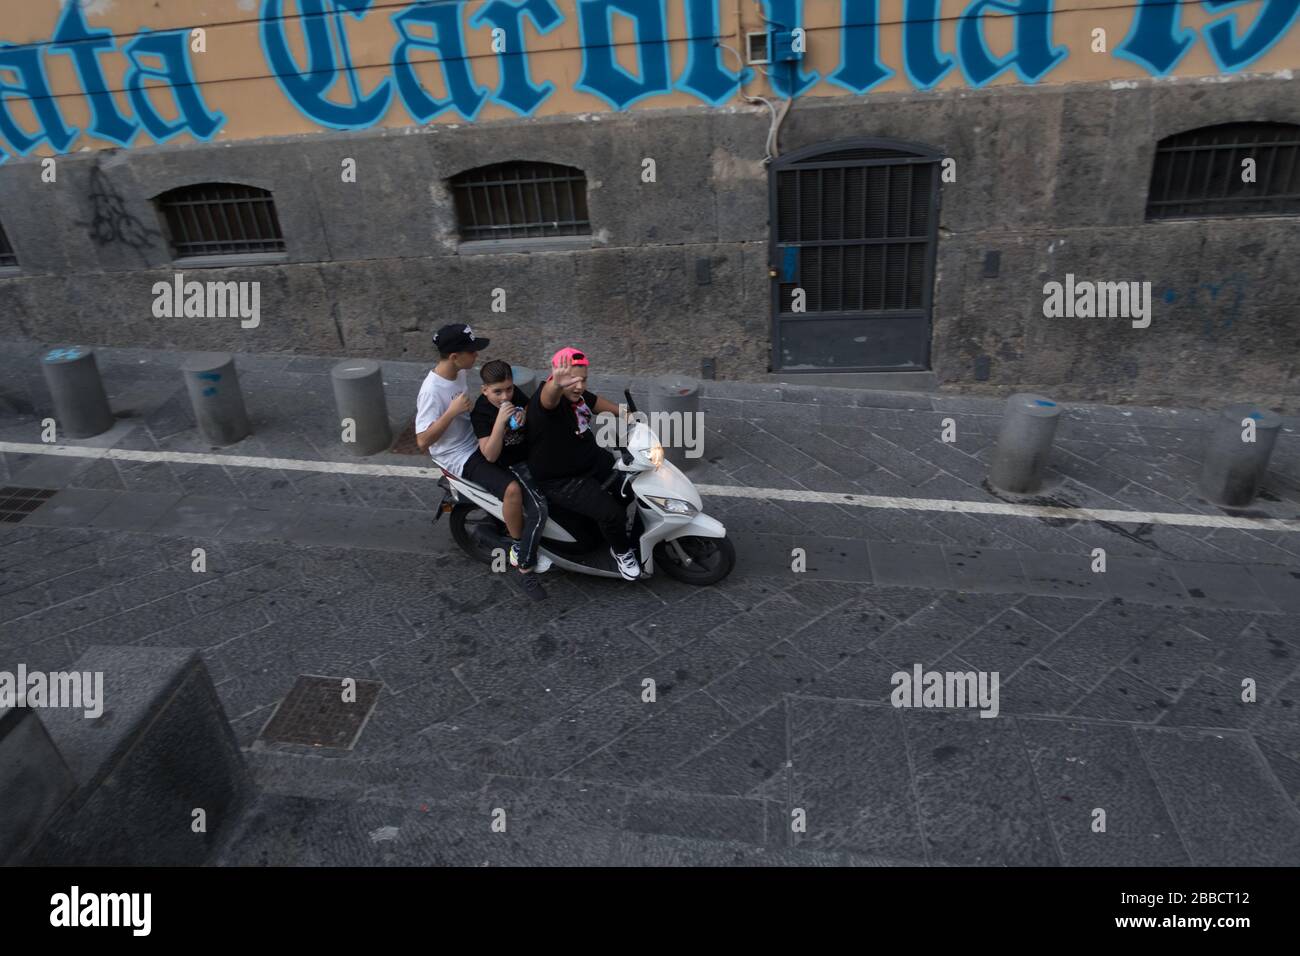 Drei Personen fahren illegal auf einem Roller ohne Helm durch die Straßen  von Neapel Stockfotografie - Alamy